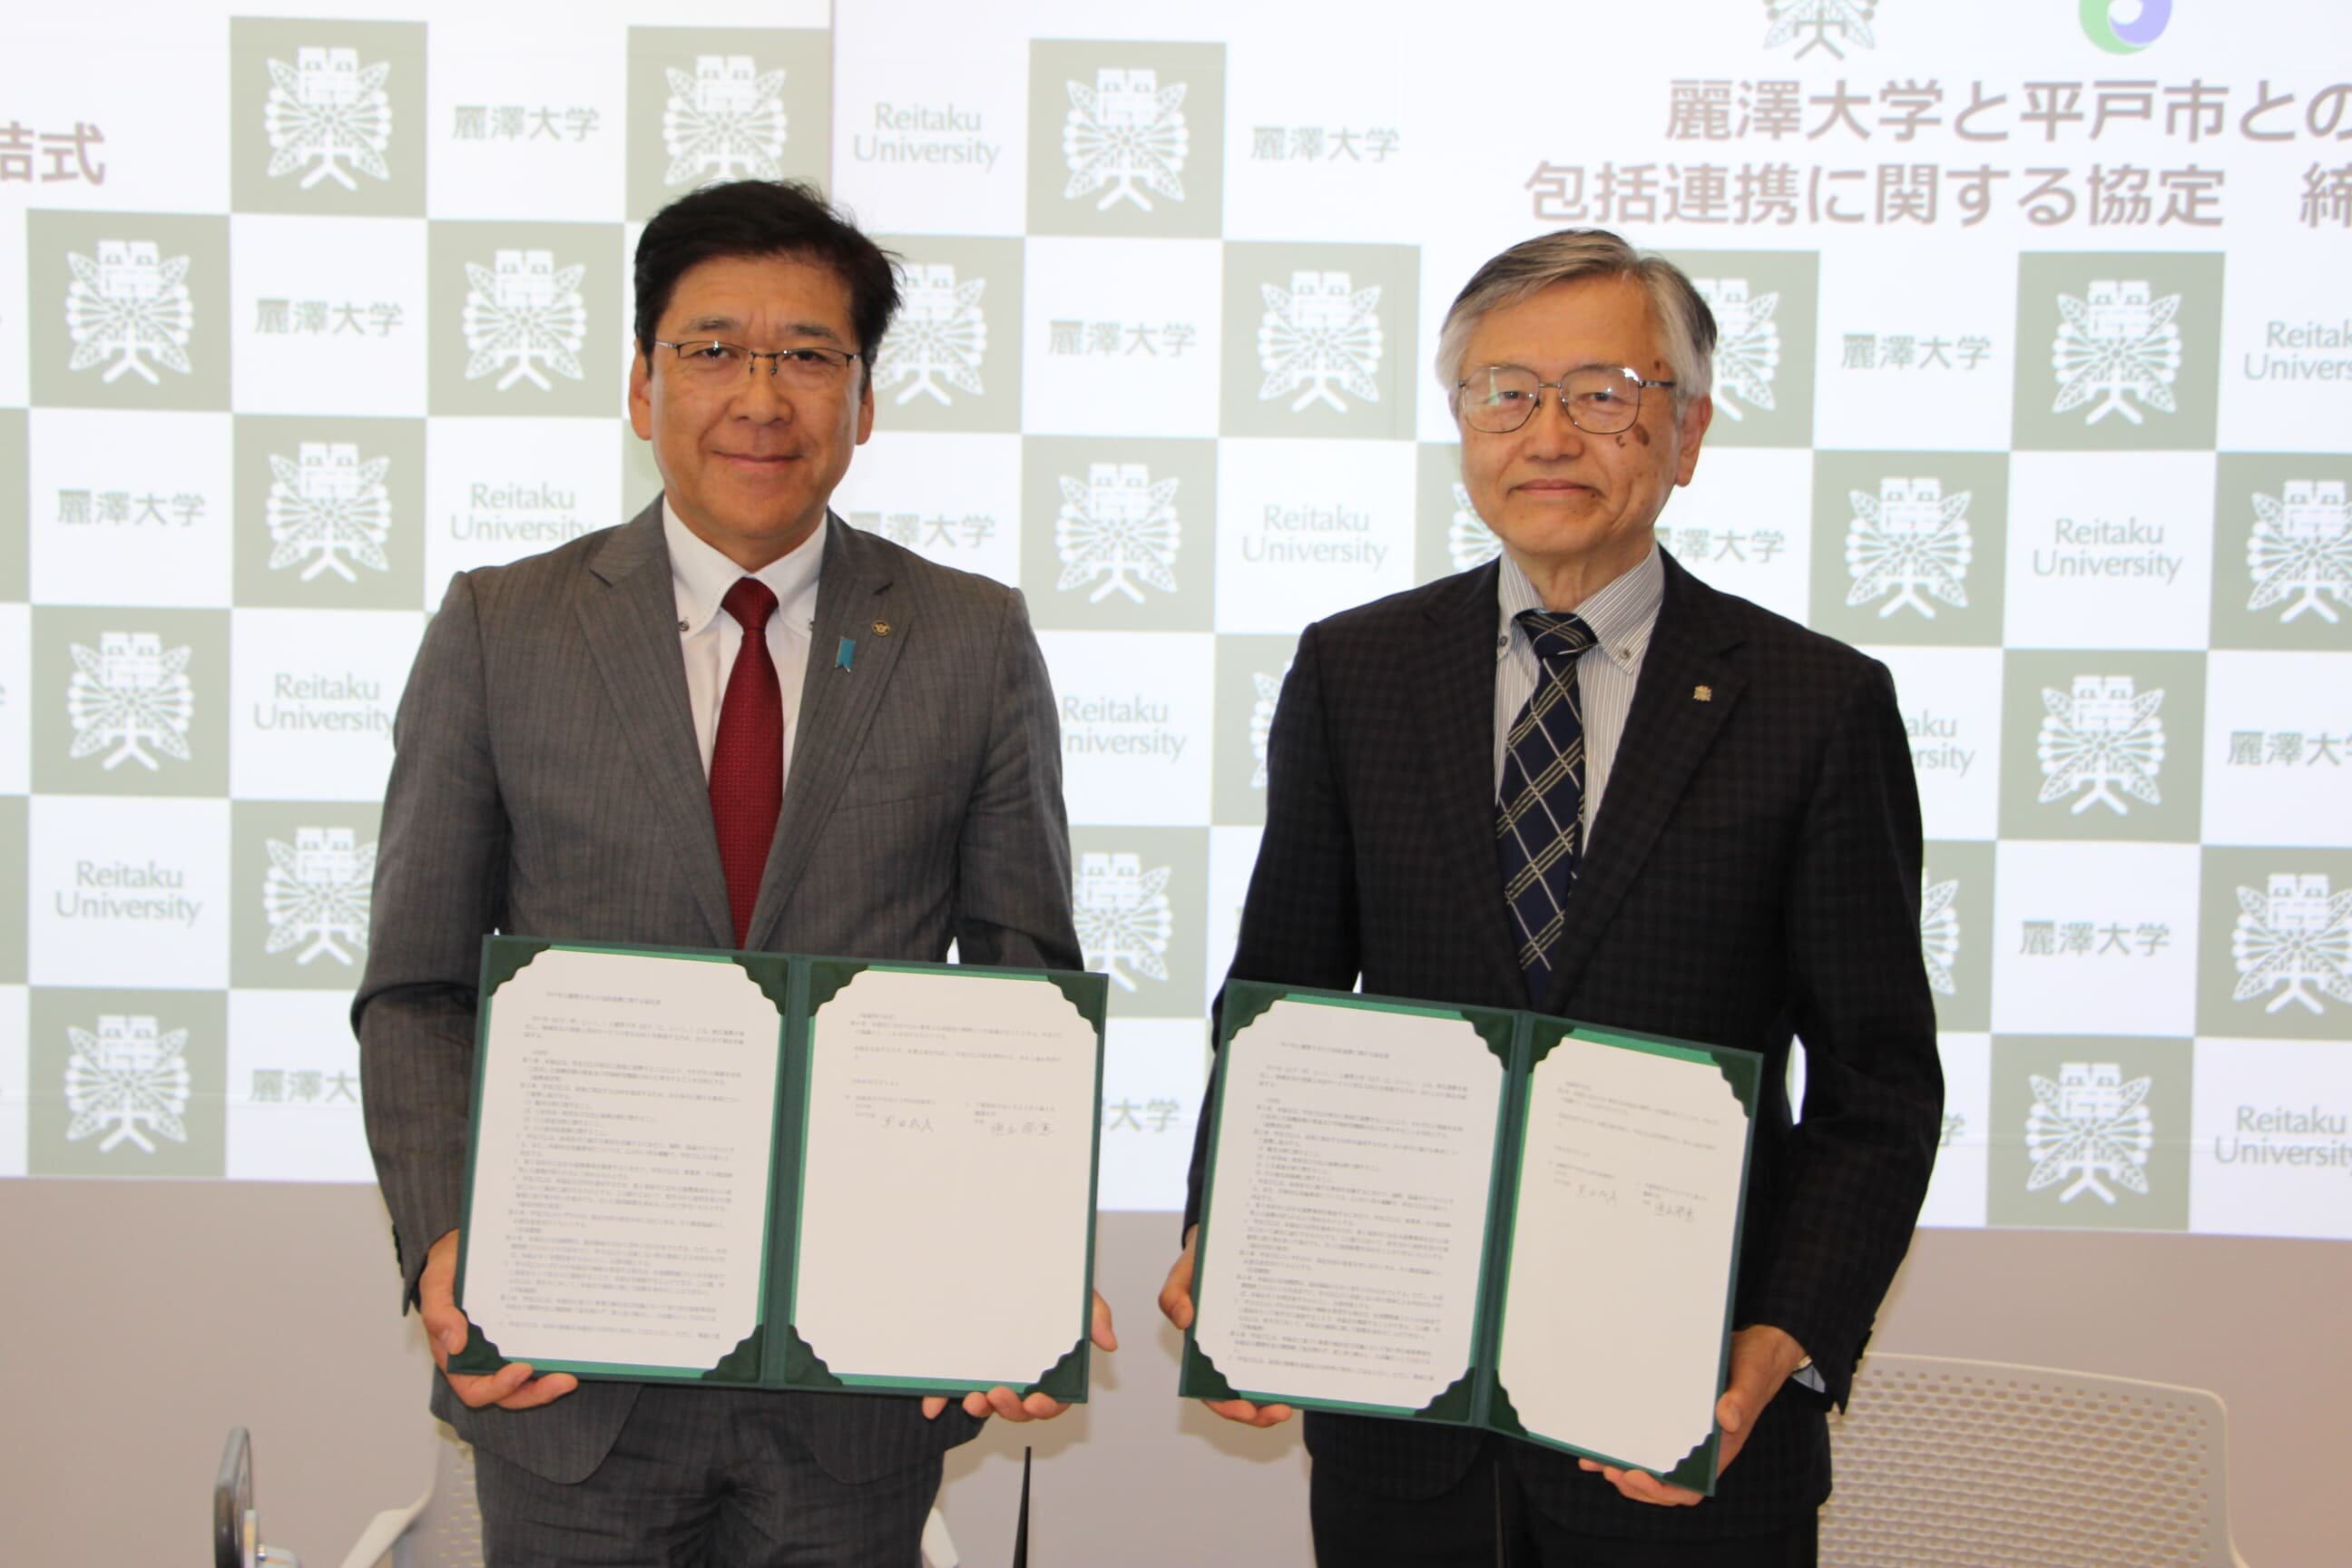 【ニュースリリース】麗澤大学と長崎県平戸市 包括連携に関する協定を締結 